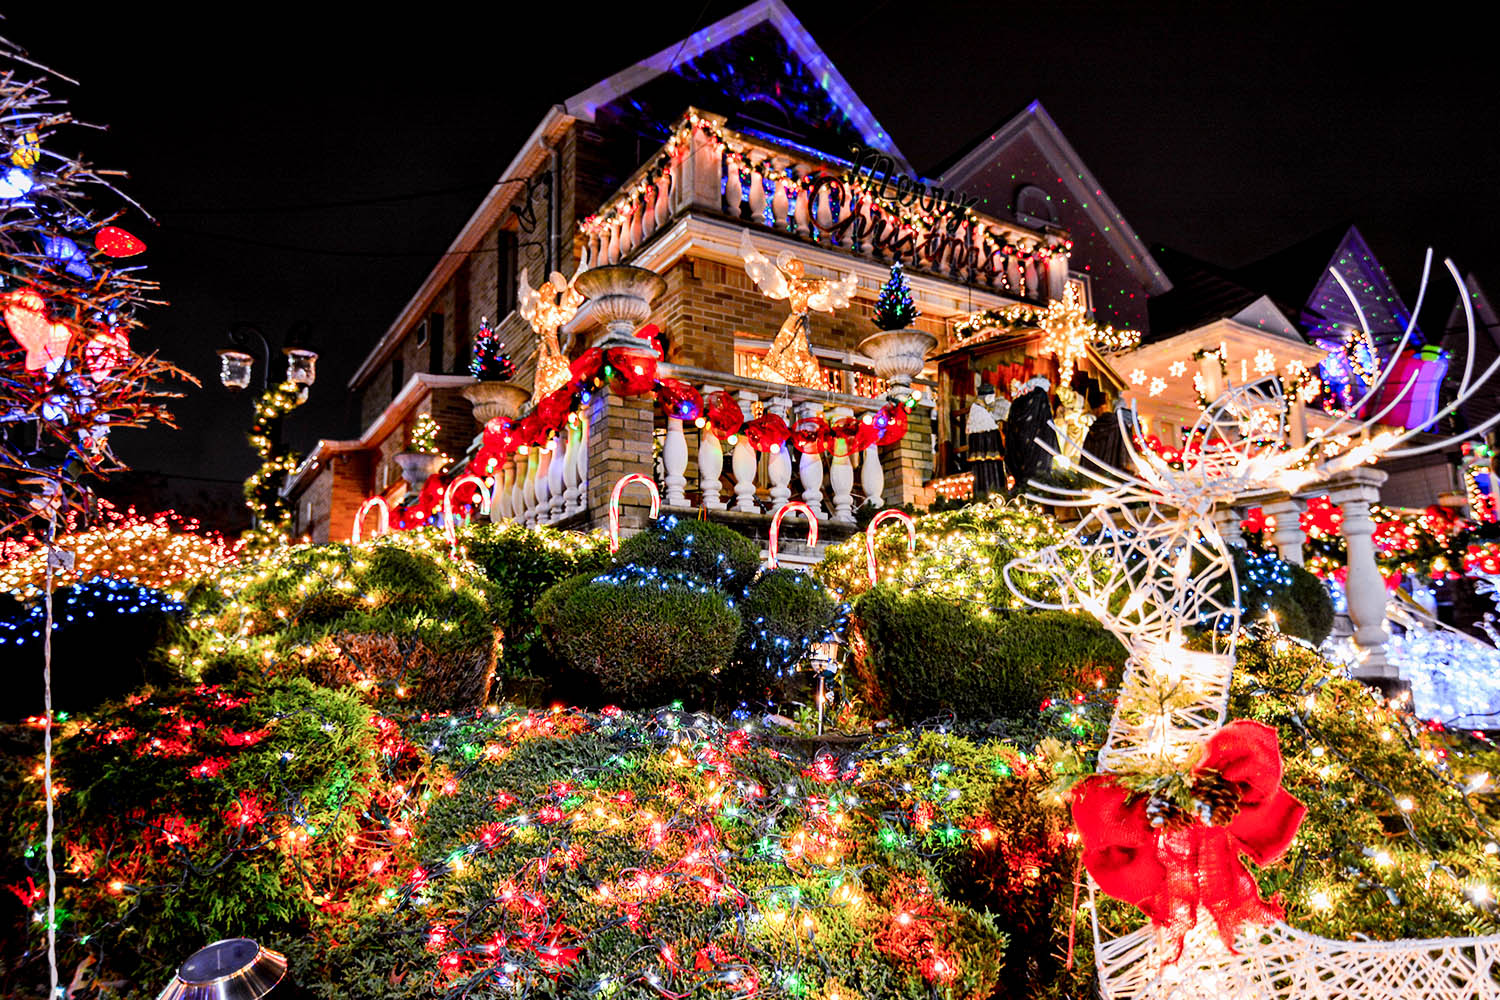 Wer Kitsch und typisch amerikanische Weihnacht liebt, sollte in Dyker Heights vorbeischauen. Das Wohngebiet in New York, im Stadtteil Brooklyn verwandelt sich ab November in ein Winter Wonderland par excellence